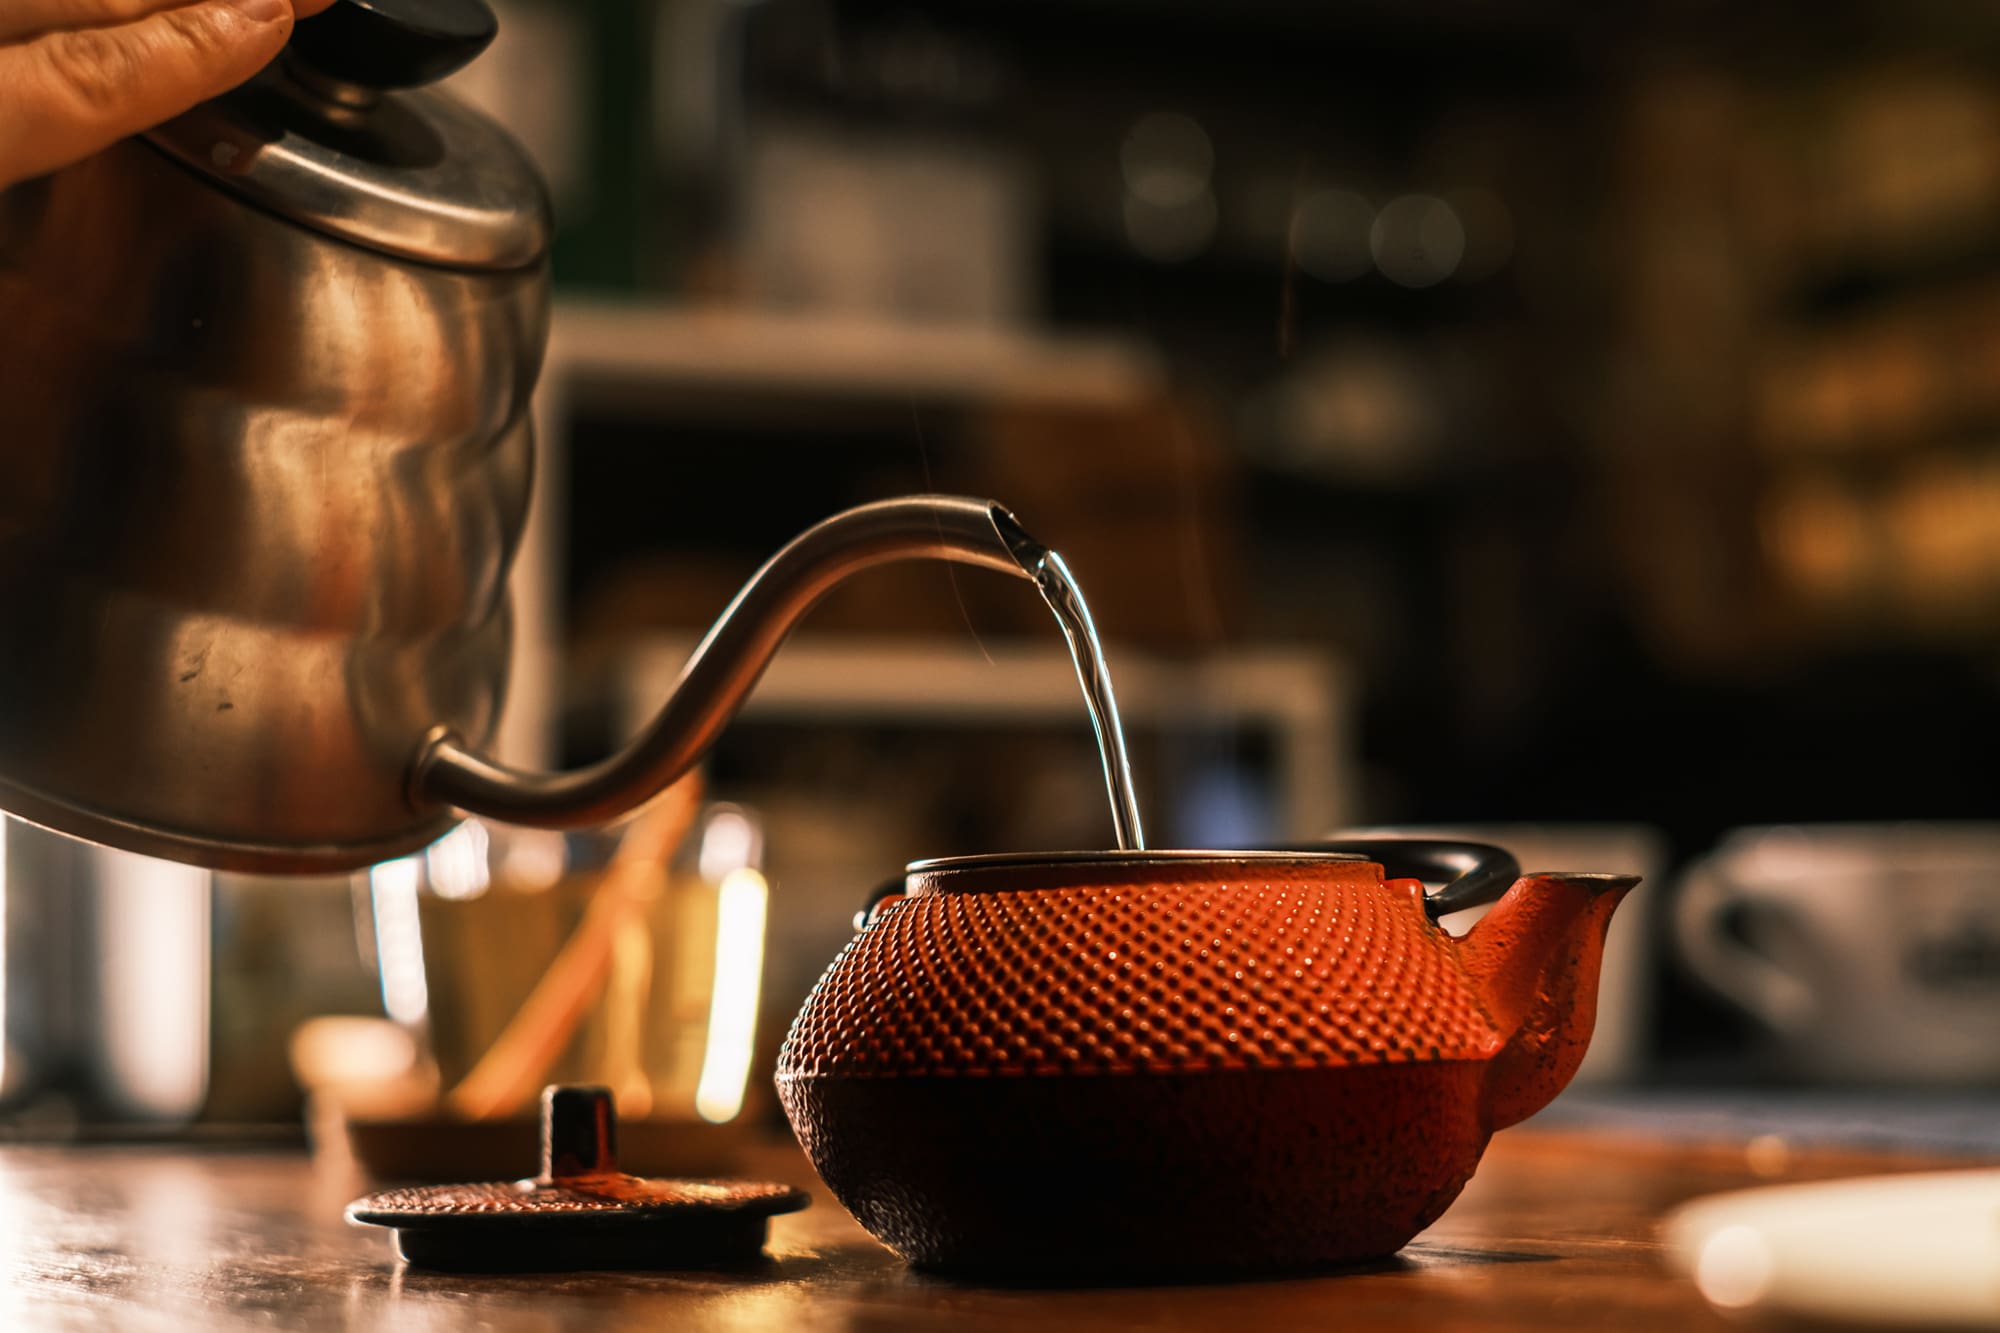 Brewing herbal tea